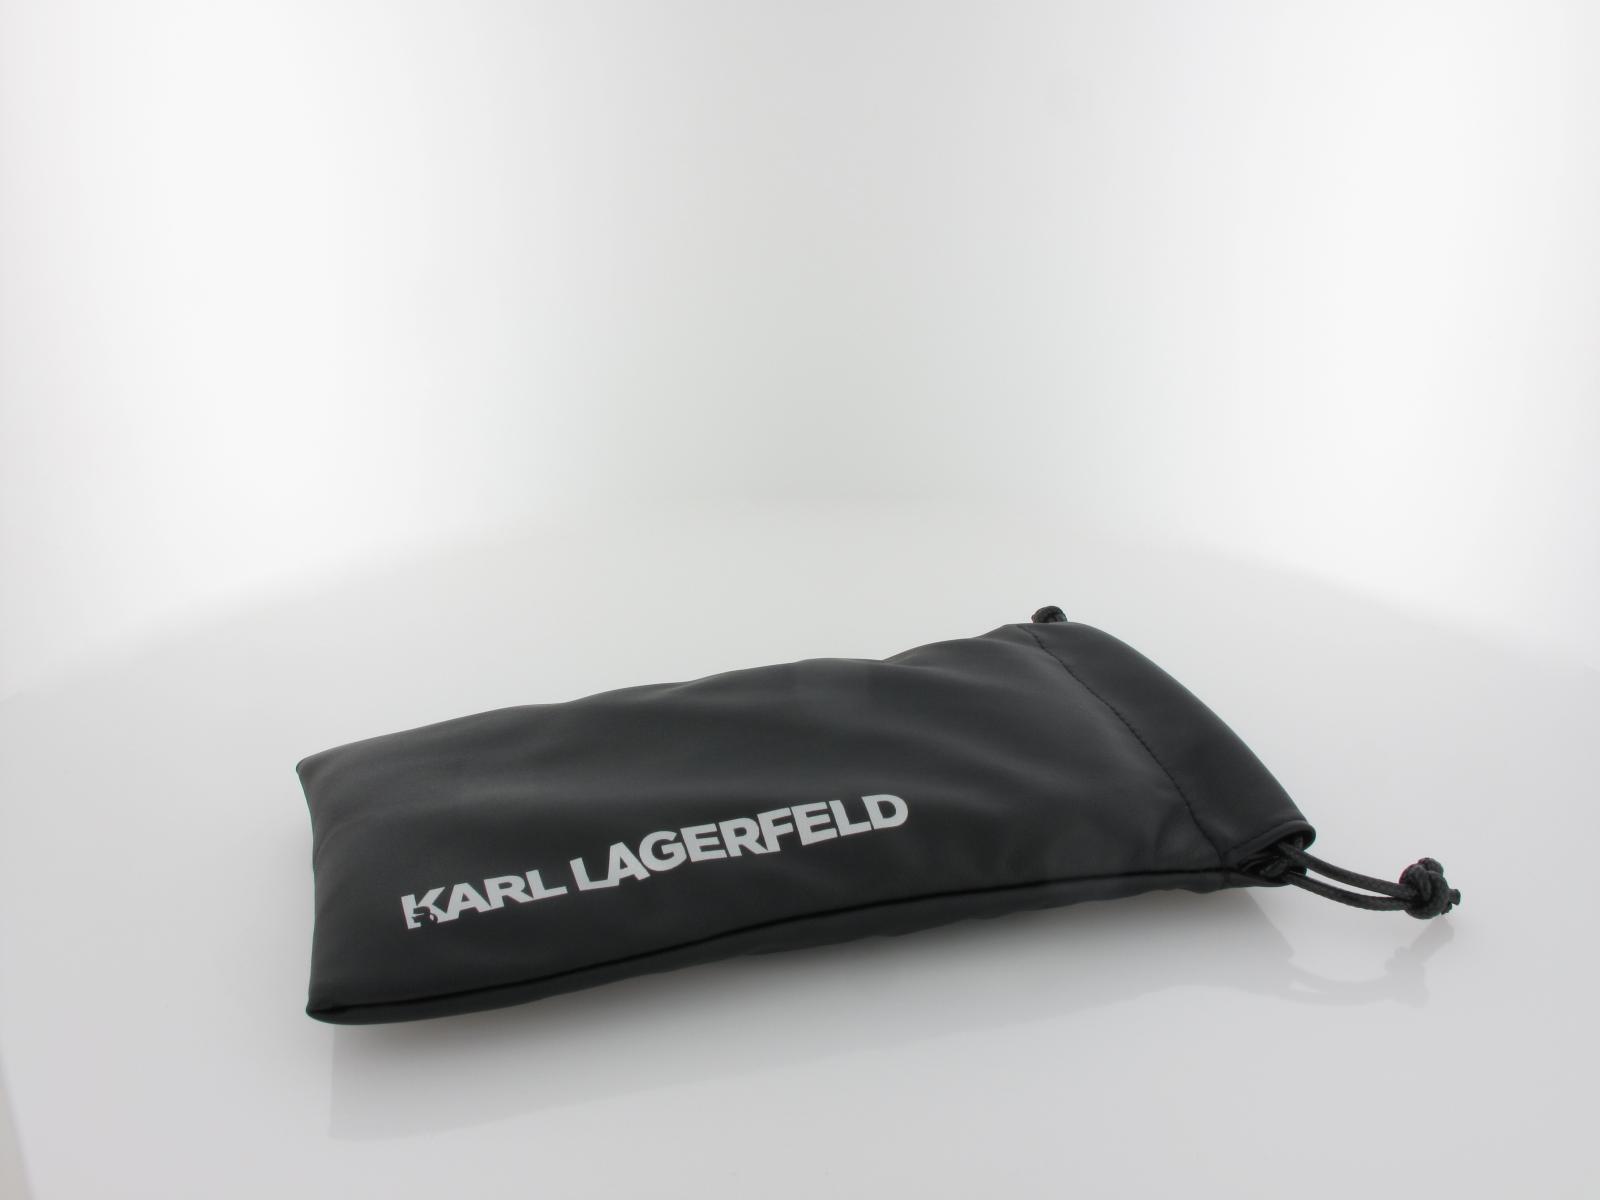 Karl Lagerfeld | KL327S 034 54 | light ruthenium / gradient grey